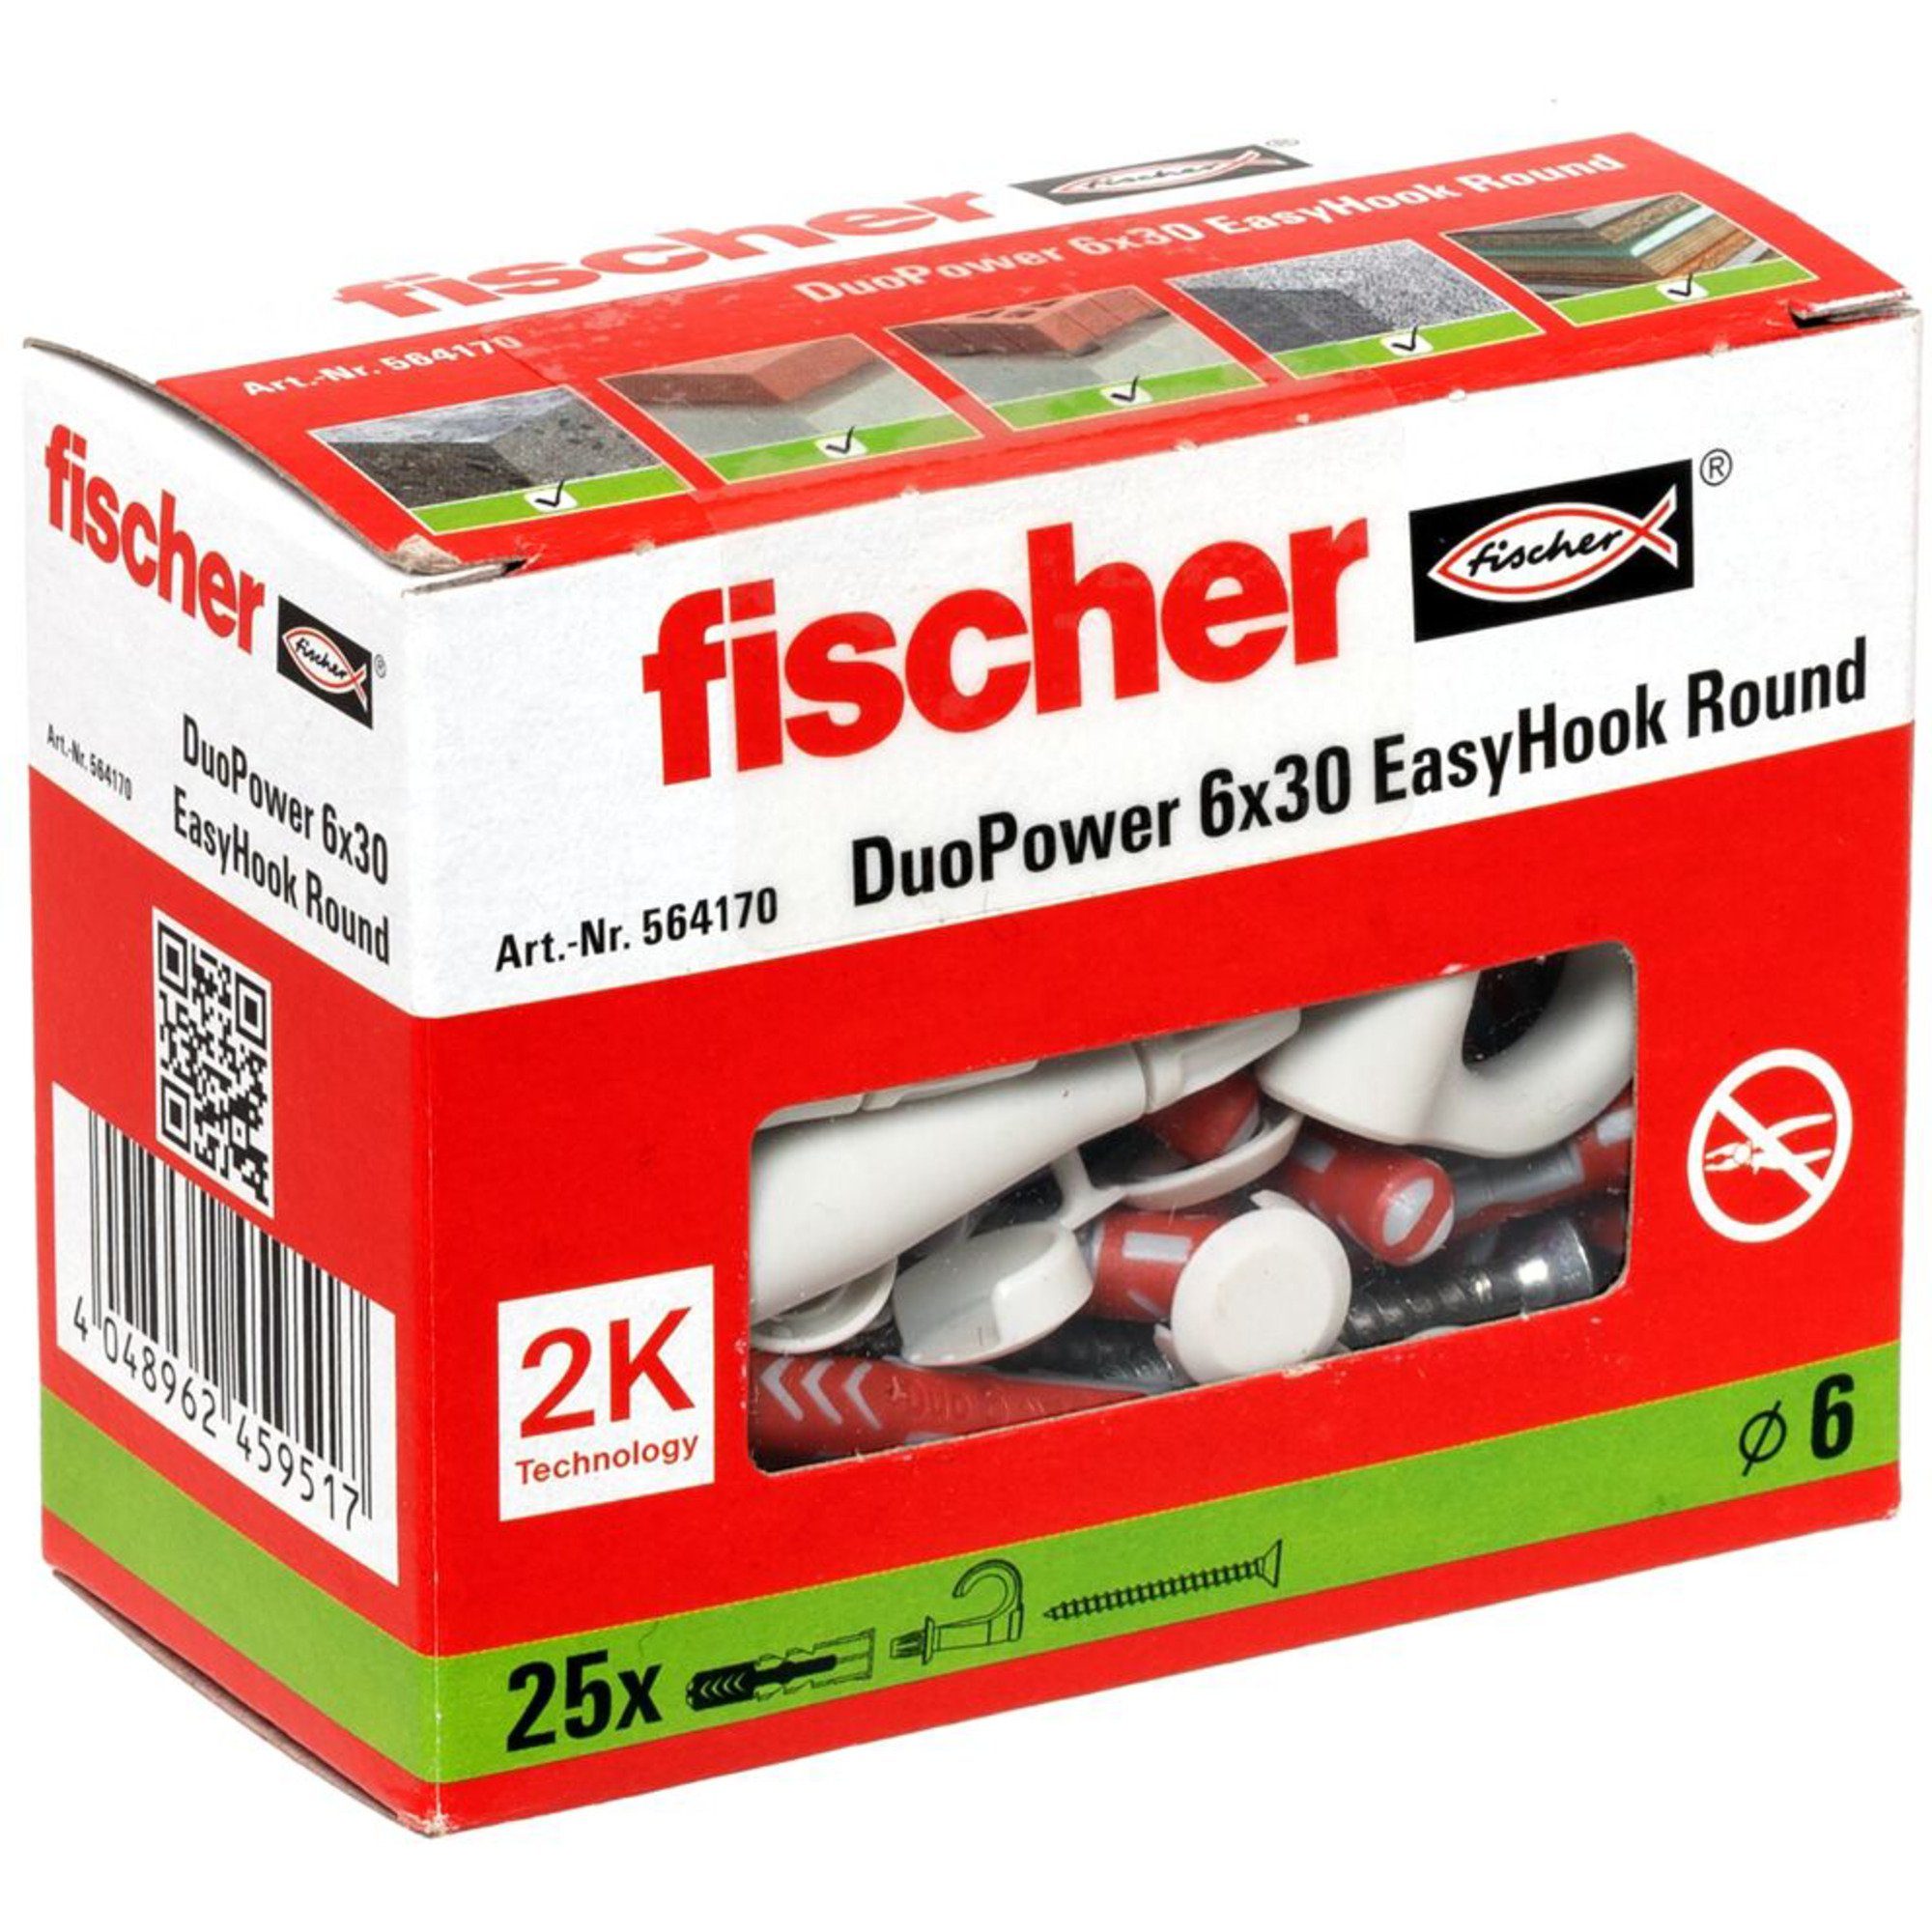 Fischer Universaldübel fischer EasyHook Round DuoPower 6x30, Dübel, (25